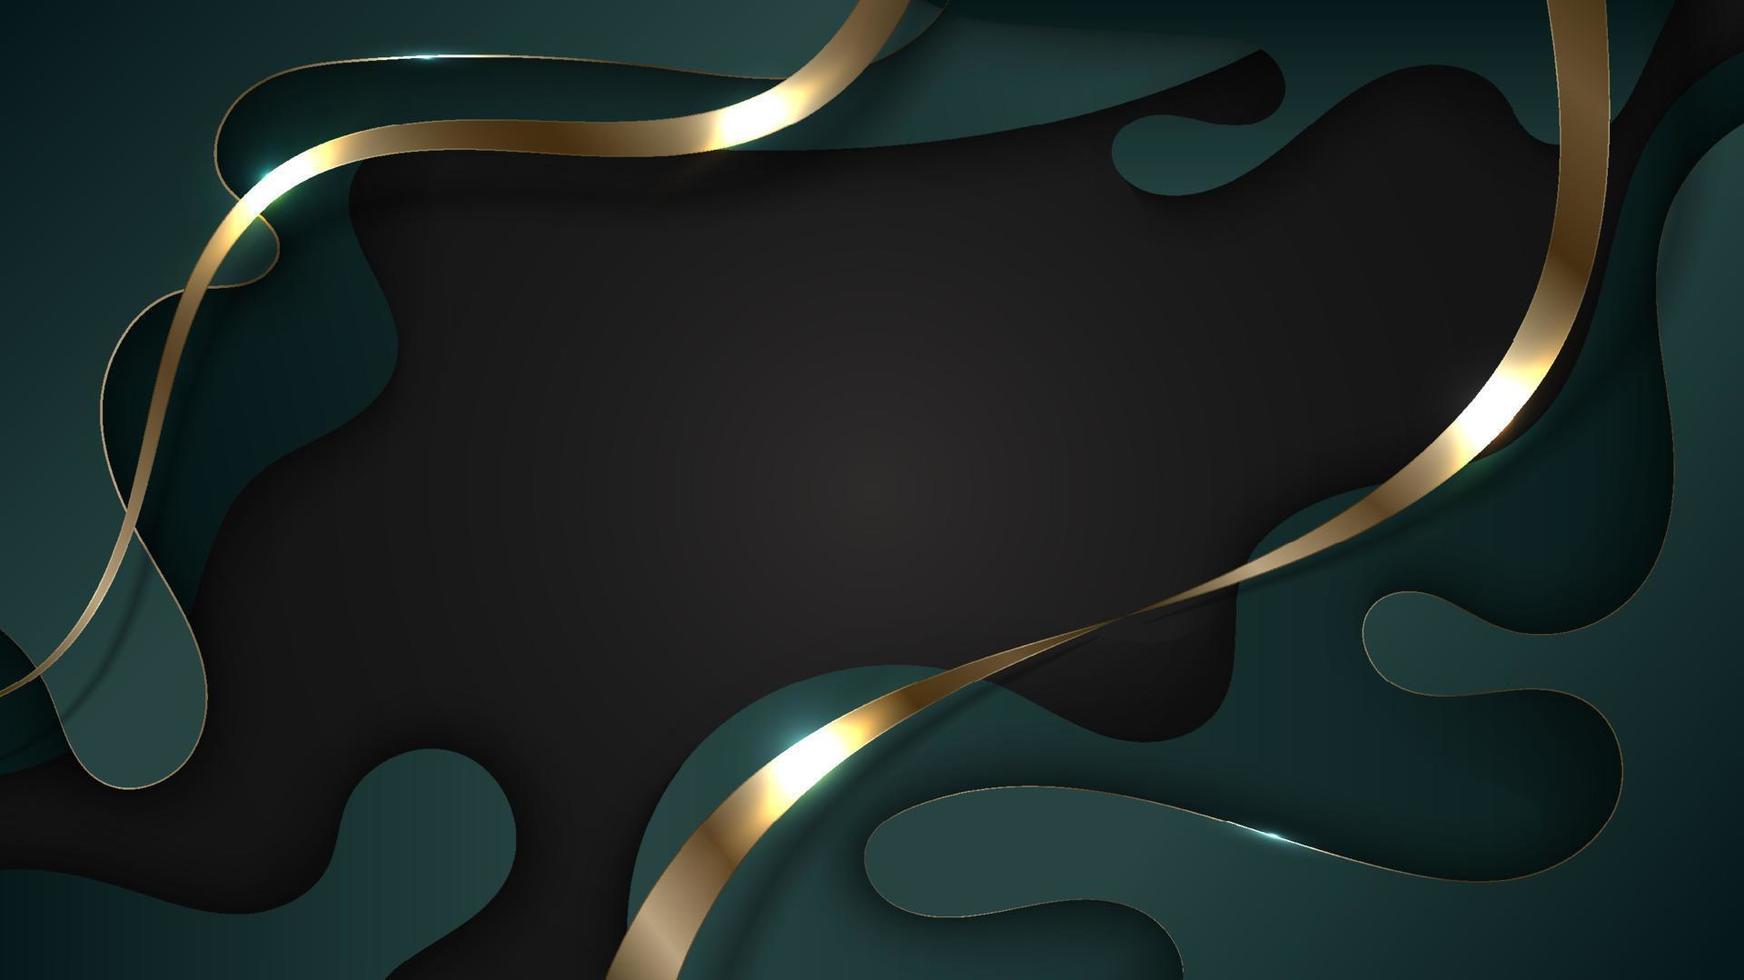 fluido verde 3d de luxo abstrato com linhas douradas no estilo de corte de papel de fundo preto vetor